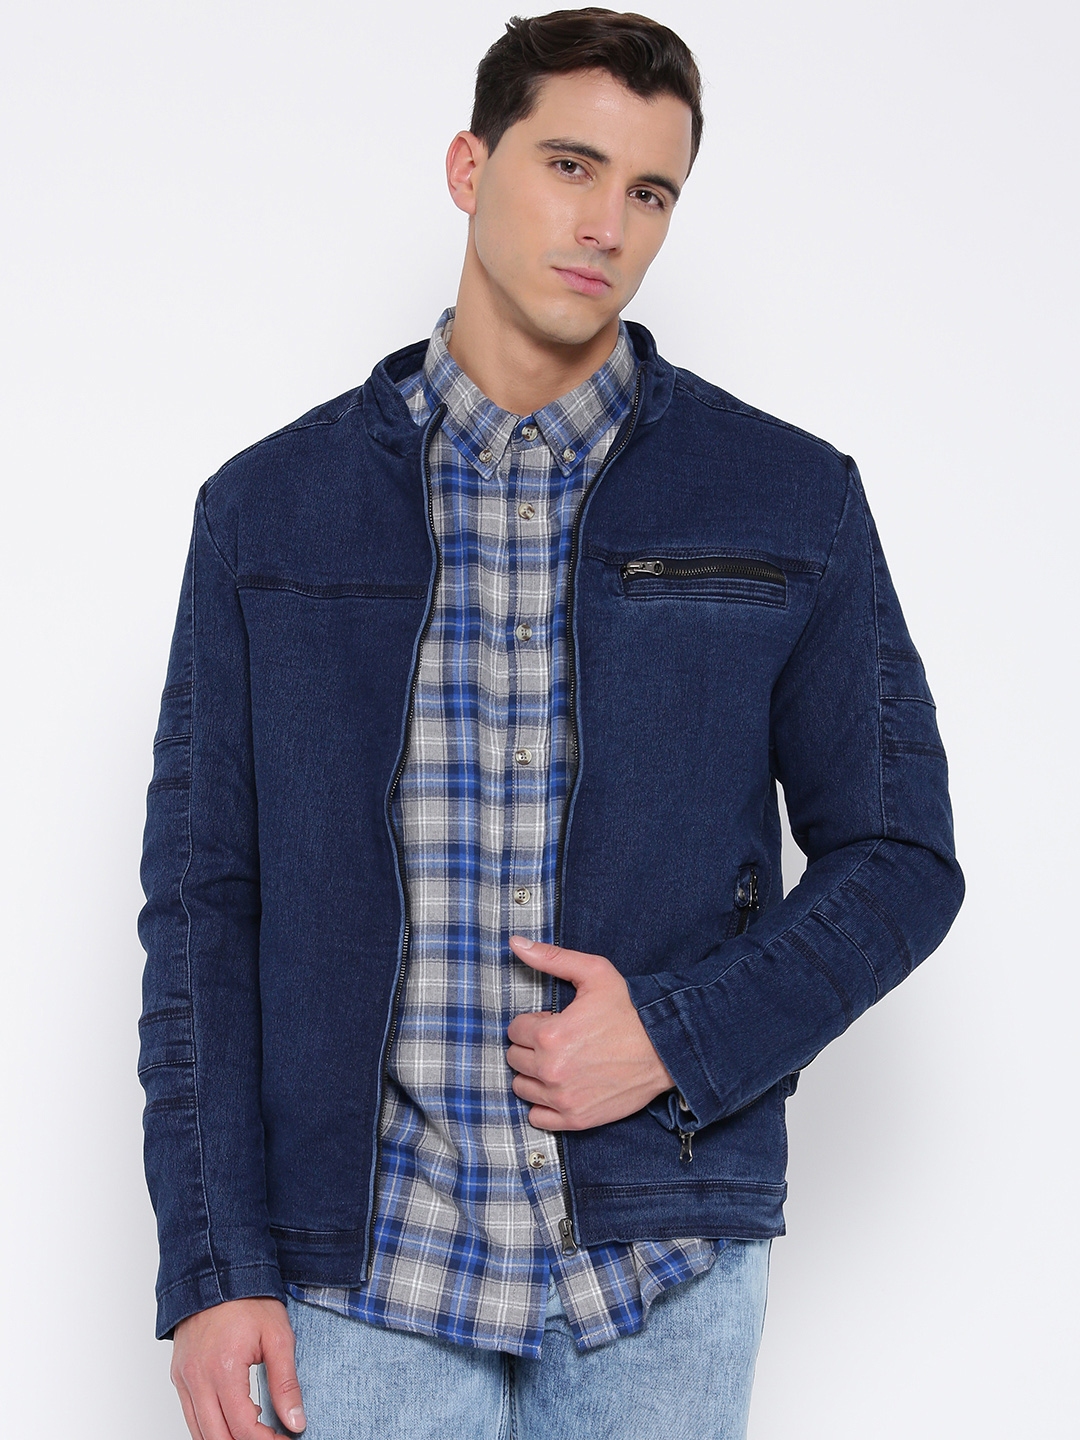 Buy Fort Collins Blue Denim Jacket - Jackets for Men 1632697 | Myntra